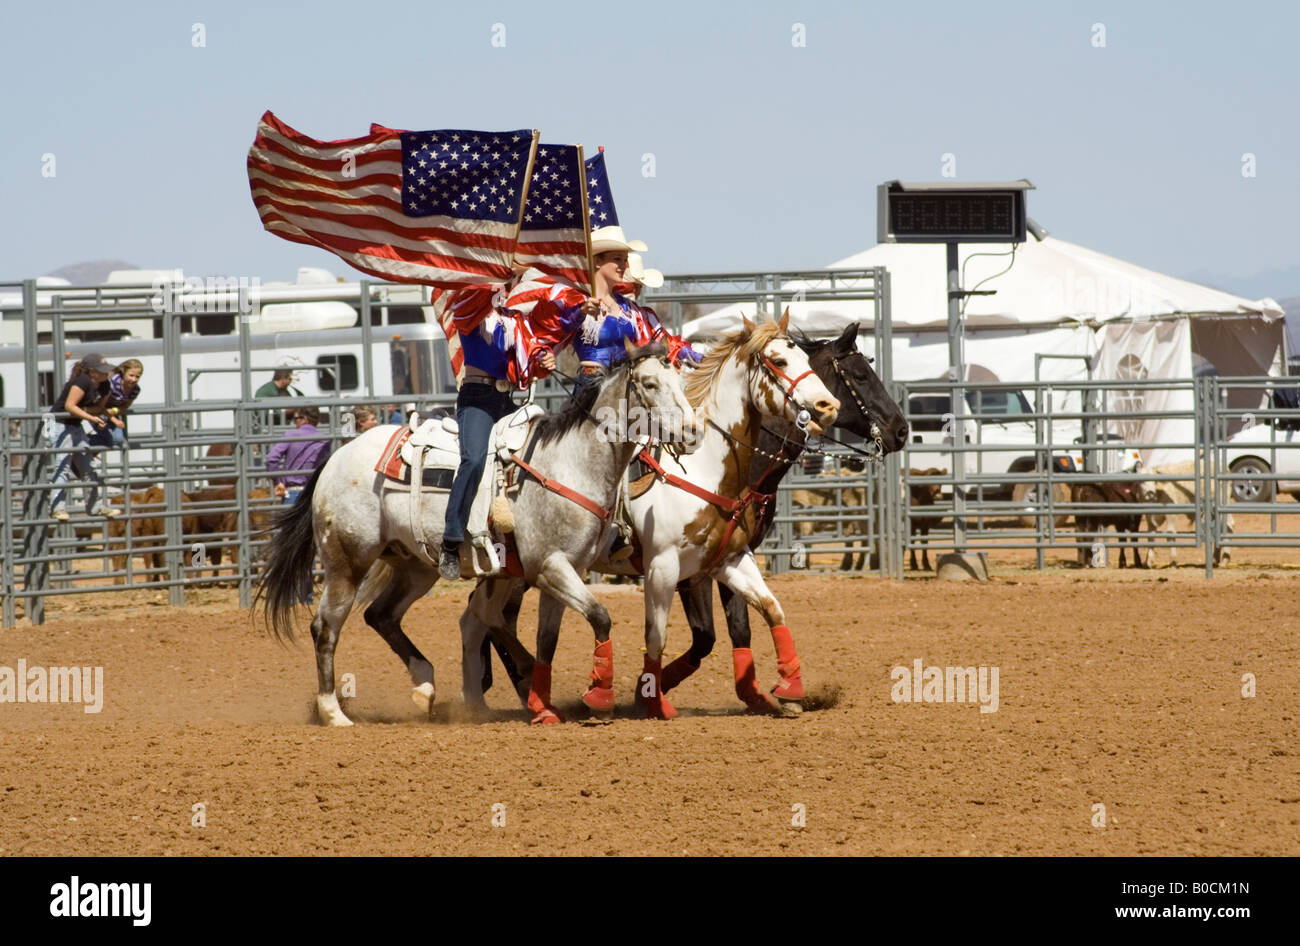 Farben-Schutz mit amerikanischen Fahnen bei der Eröffnungsfeier des Rodeo, Arizona Stockfoto